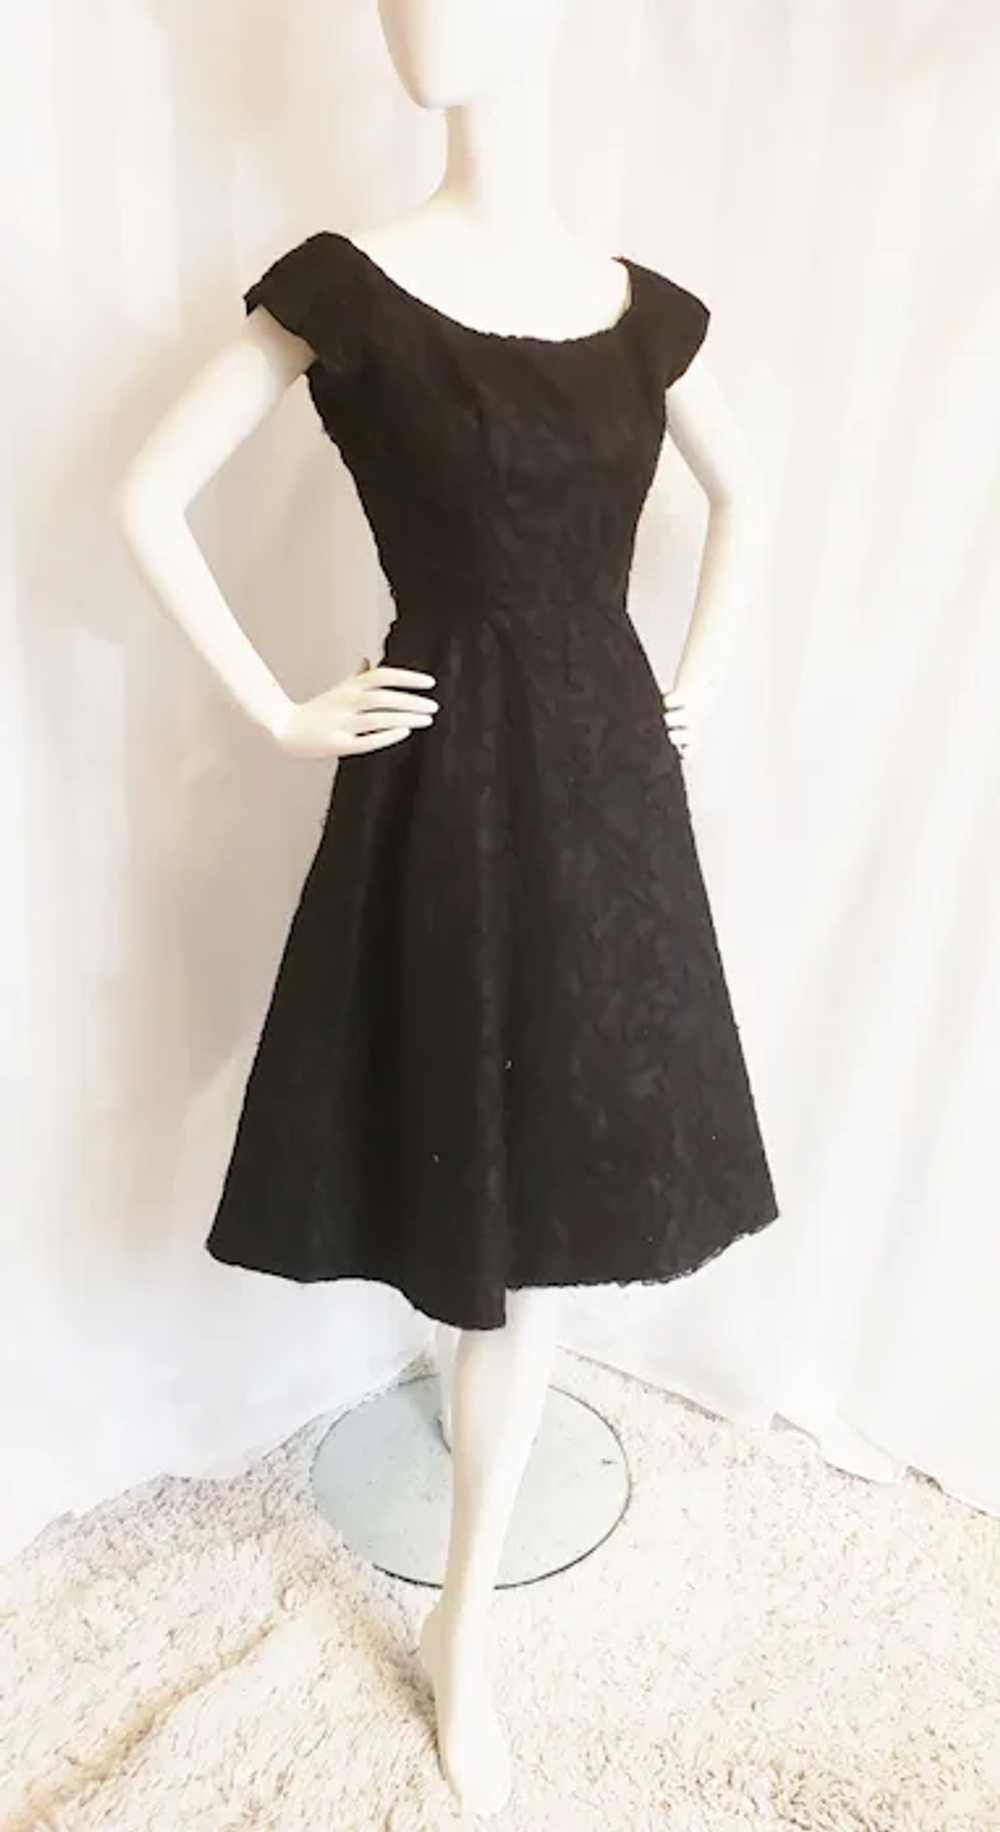 Hattie Carnegie 1950's Black Lace Cocktail Dress - image 2